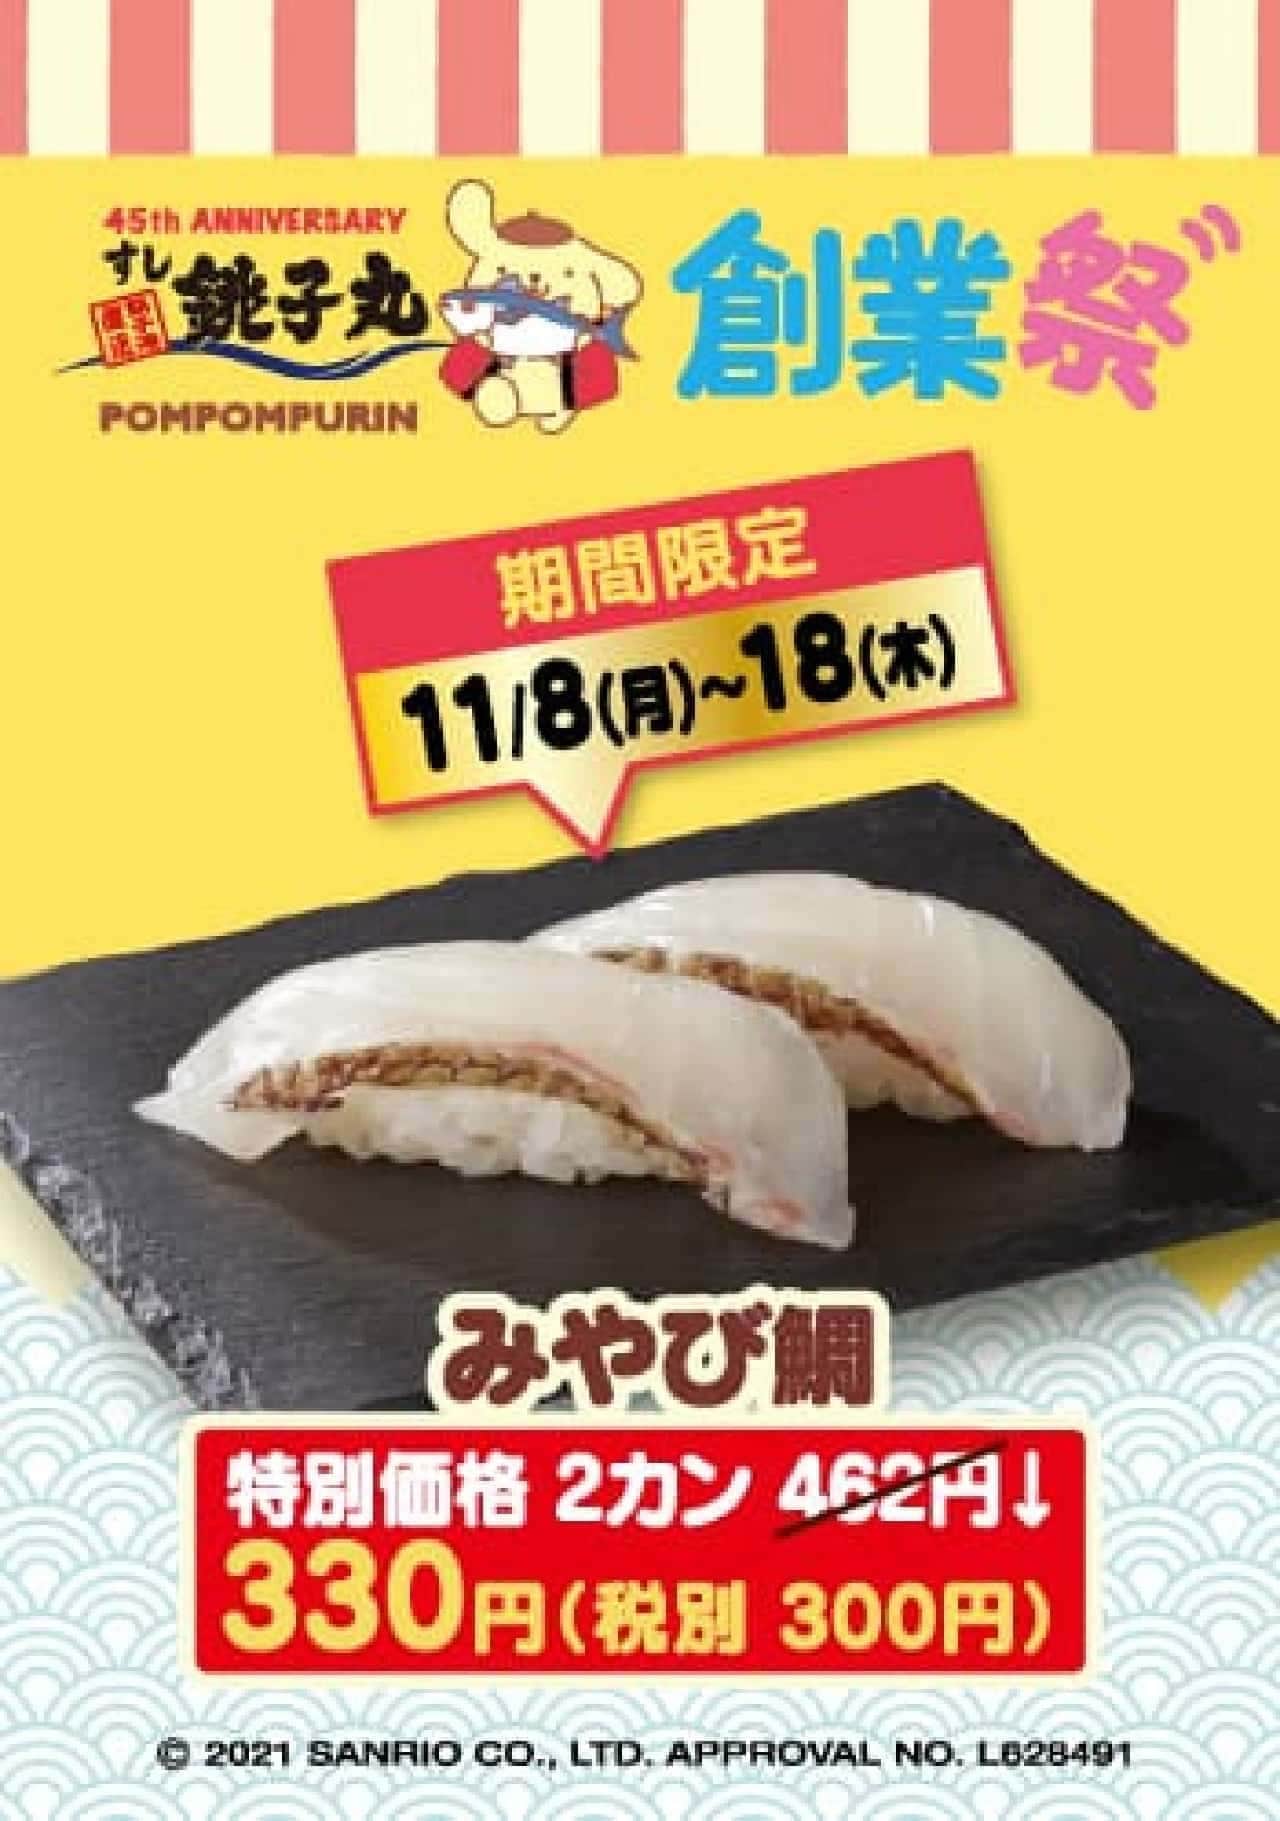 すし銚子丸と「ポムポムプリン」コラボ「45th ANNIVERSARY創業祭」